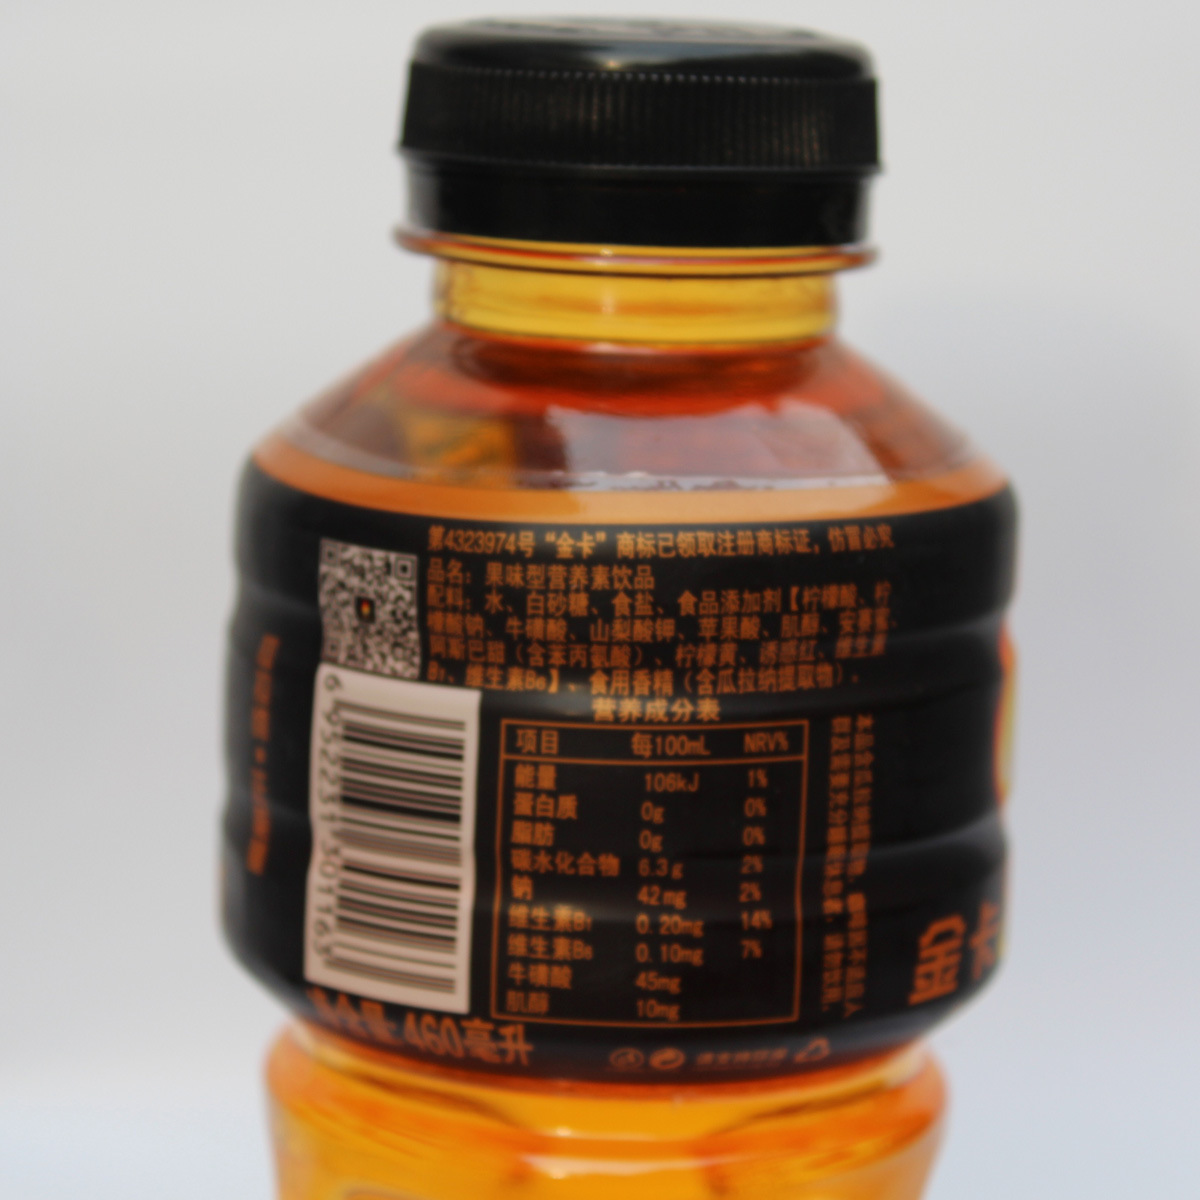 460毫升瓶装果味型营养素饮品 金卡8小时 低价批发功能饮料招商